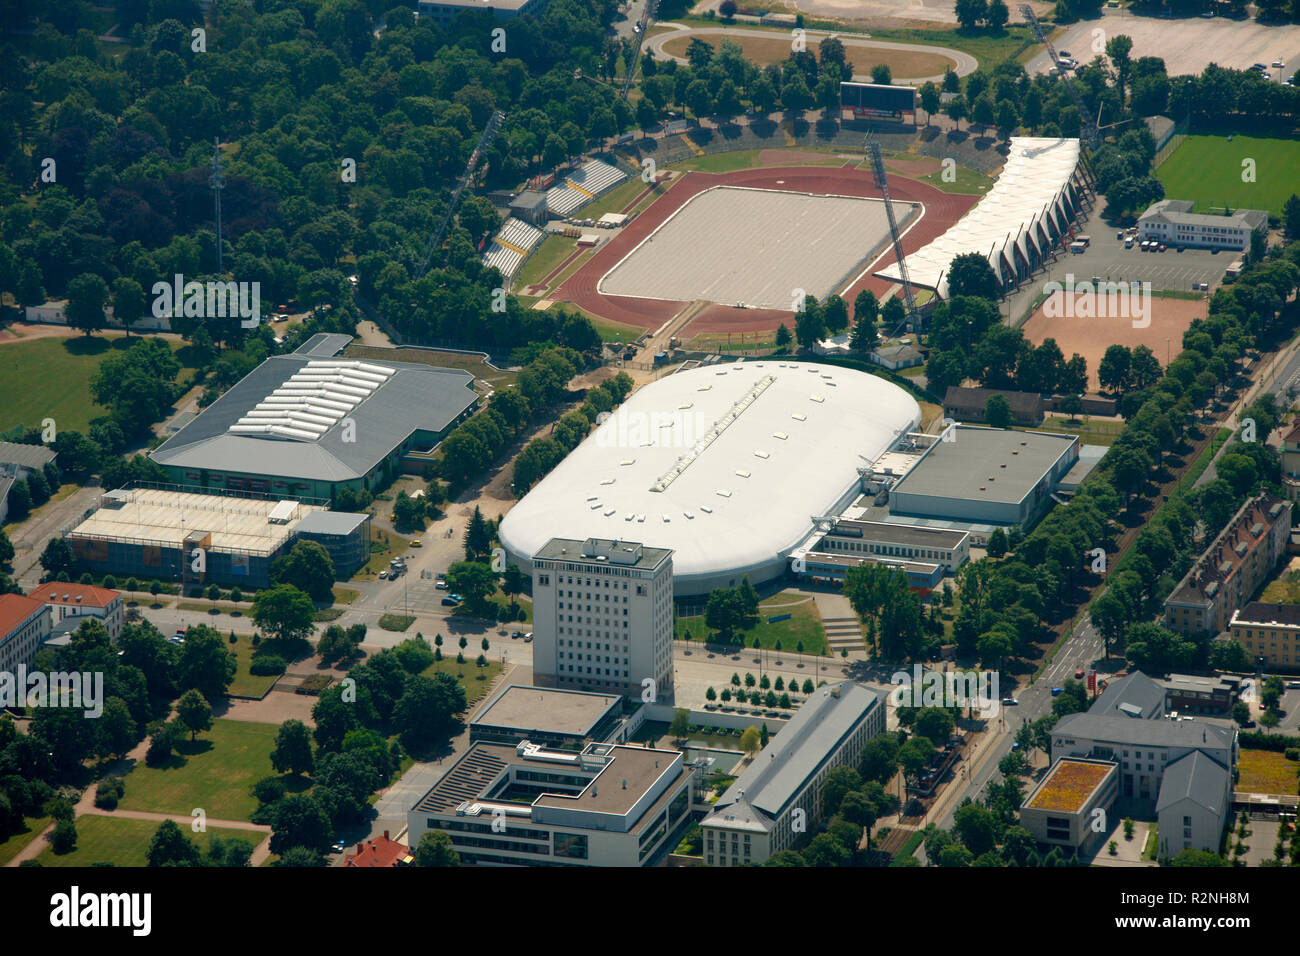 Aerial view, Gunda-Niemann-Stirnemann-Halle, Steigerwaldstadion, aerial view, B4 4, Erfurt, Thuringia, Germany, Europe, Stock Photo